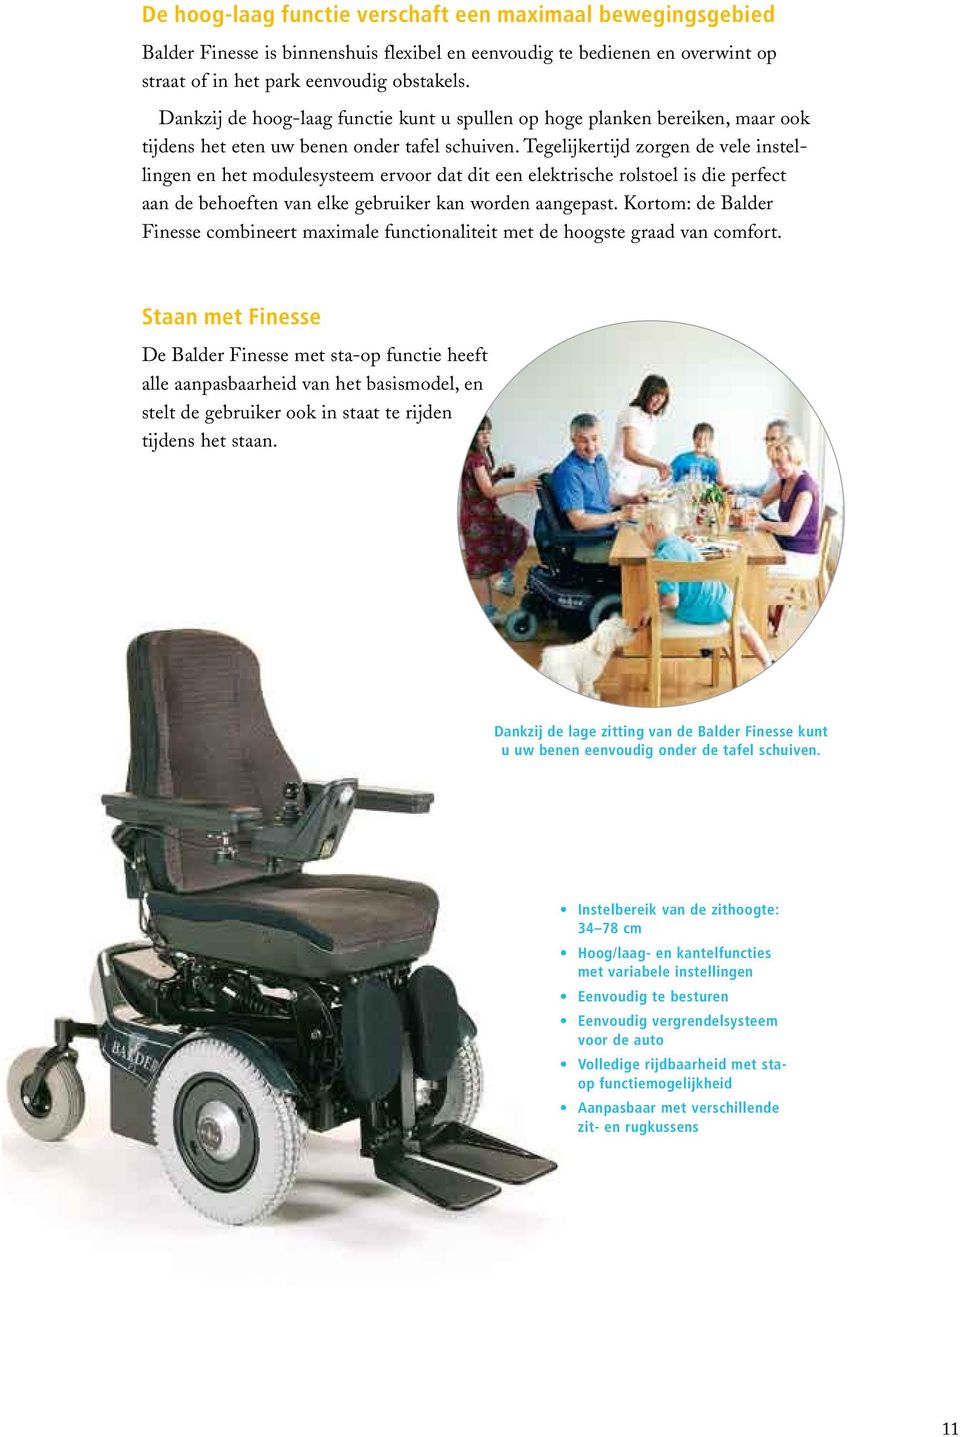 Tegelijkertijd zorgen de vele instellingen en het modulesysteem ervoor dat dit een elektrische rolstoel is die perfect aan de behoeften van elke gebruiker kan worden aangepast.